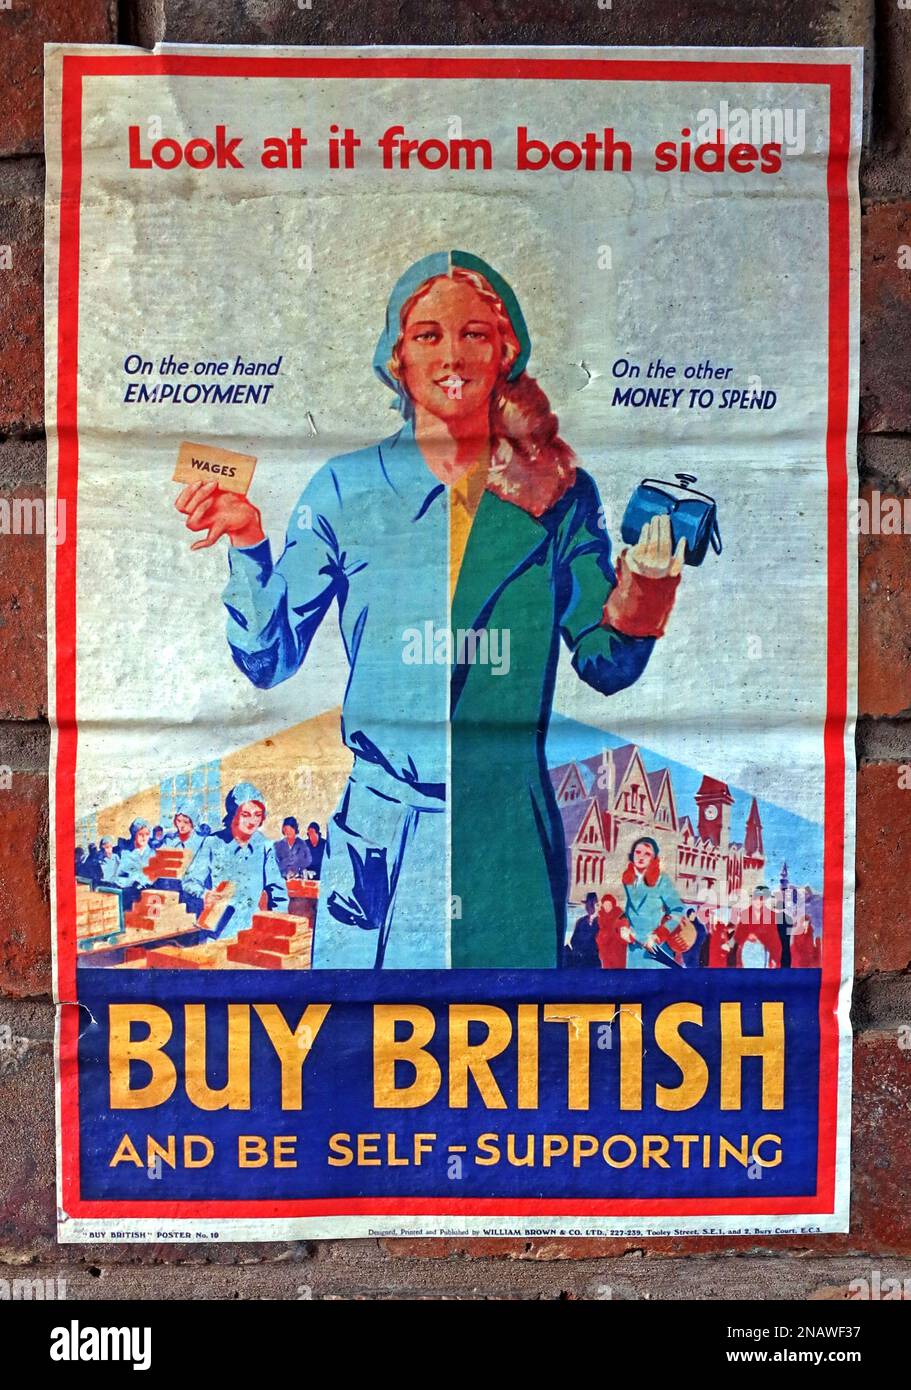 Poster - Britisches Geld kaufen und selbsttragend sein, es von beiden Seiten betrachten, Beschäftigung, Geld ausgeben Stockfoto